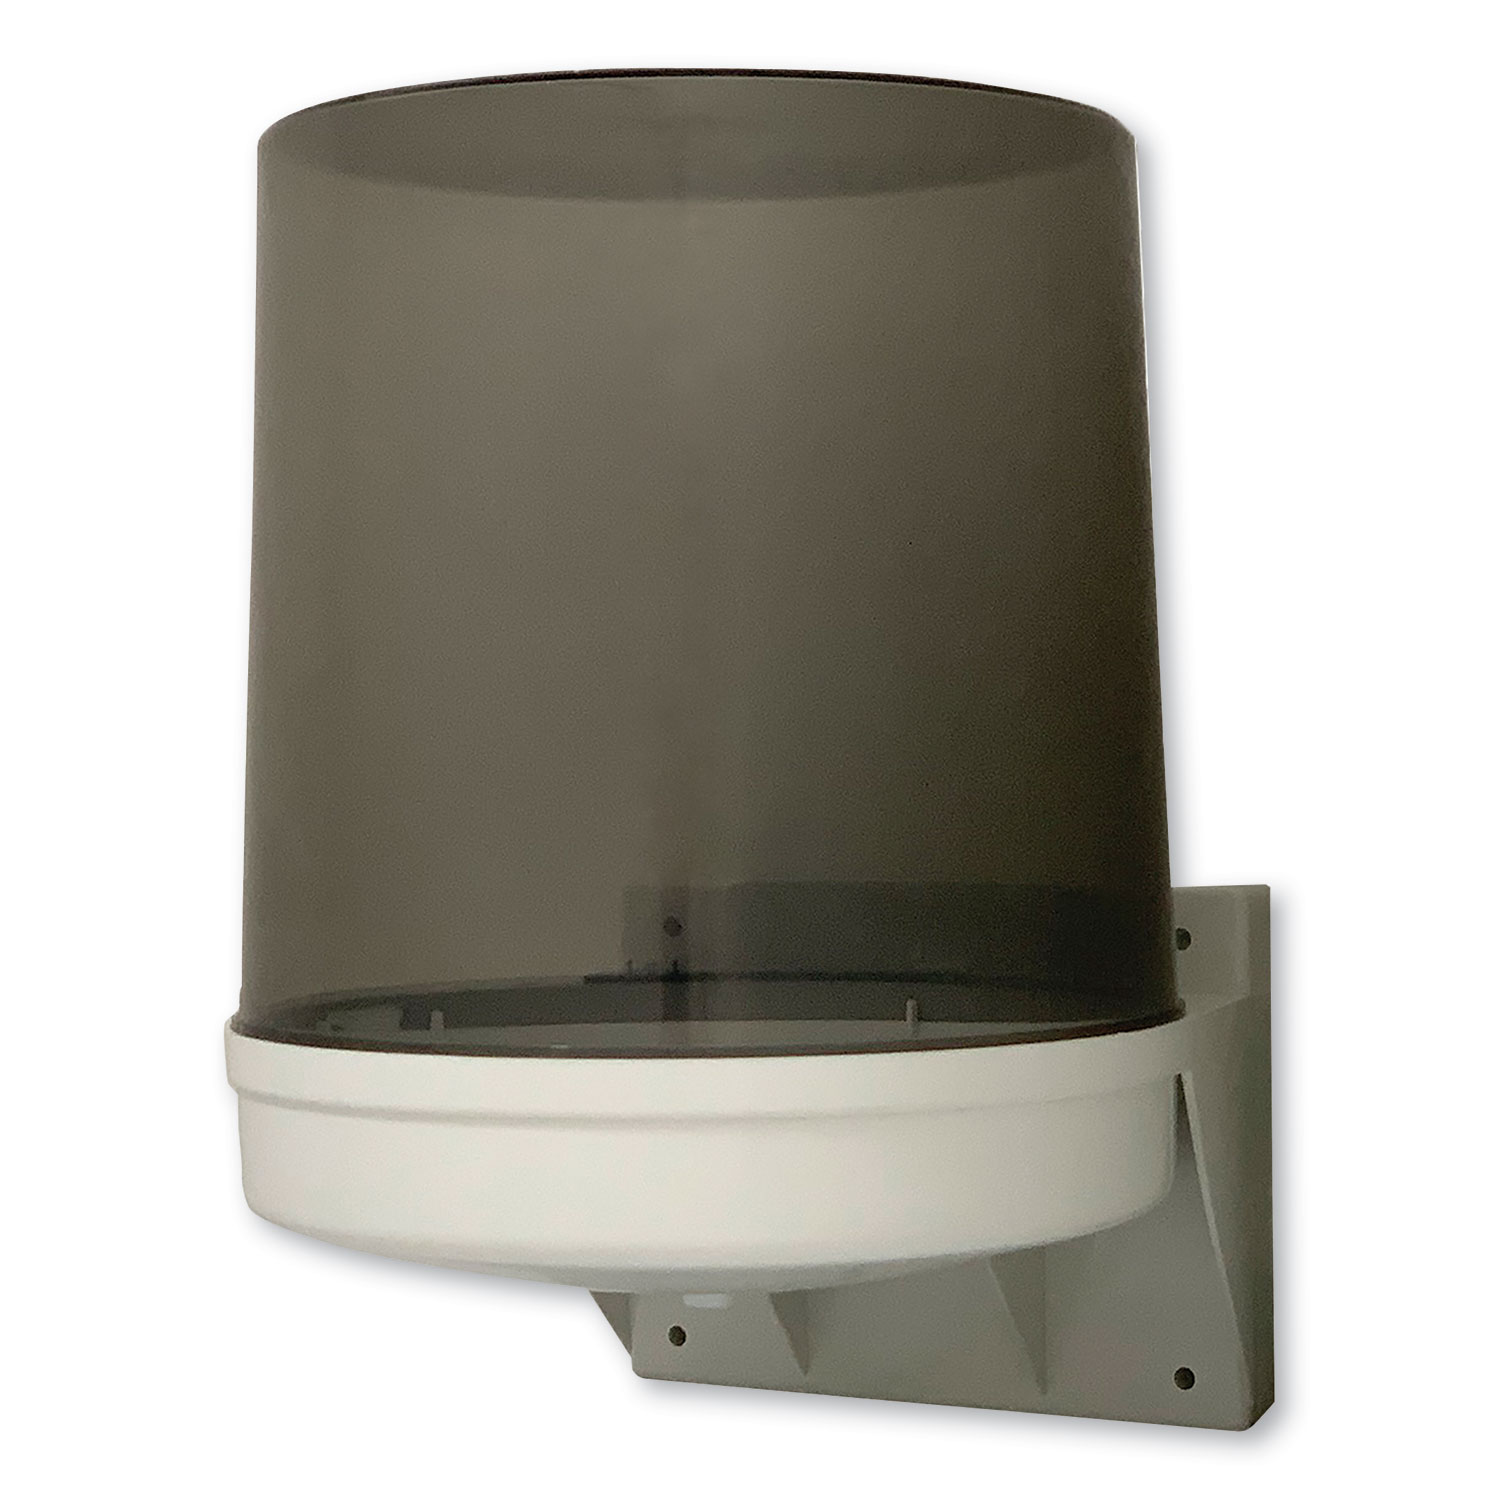  GEN 030-02 Center Pull Towel Dispenser, 10 1/2 x 9 x 14 1/2, Transparent (GEN1606) 